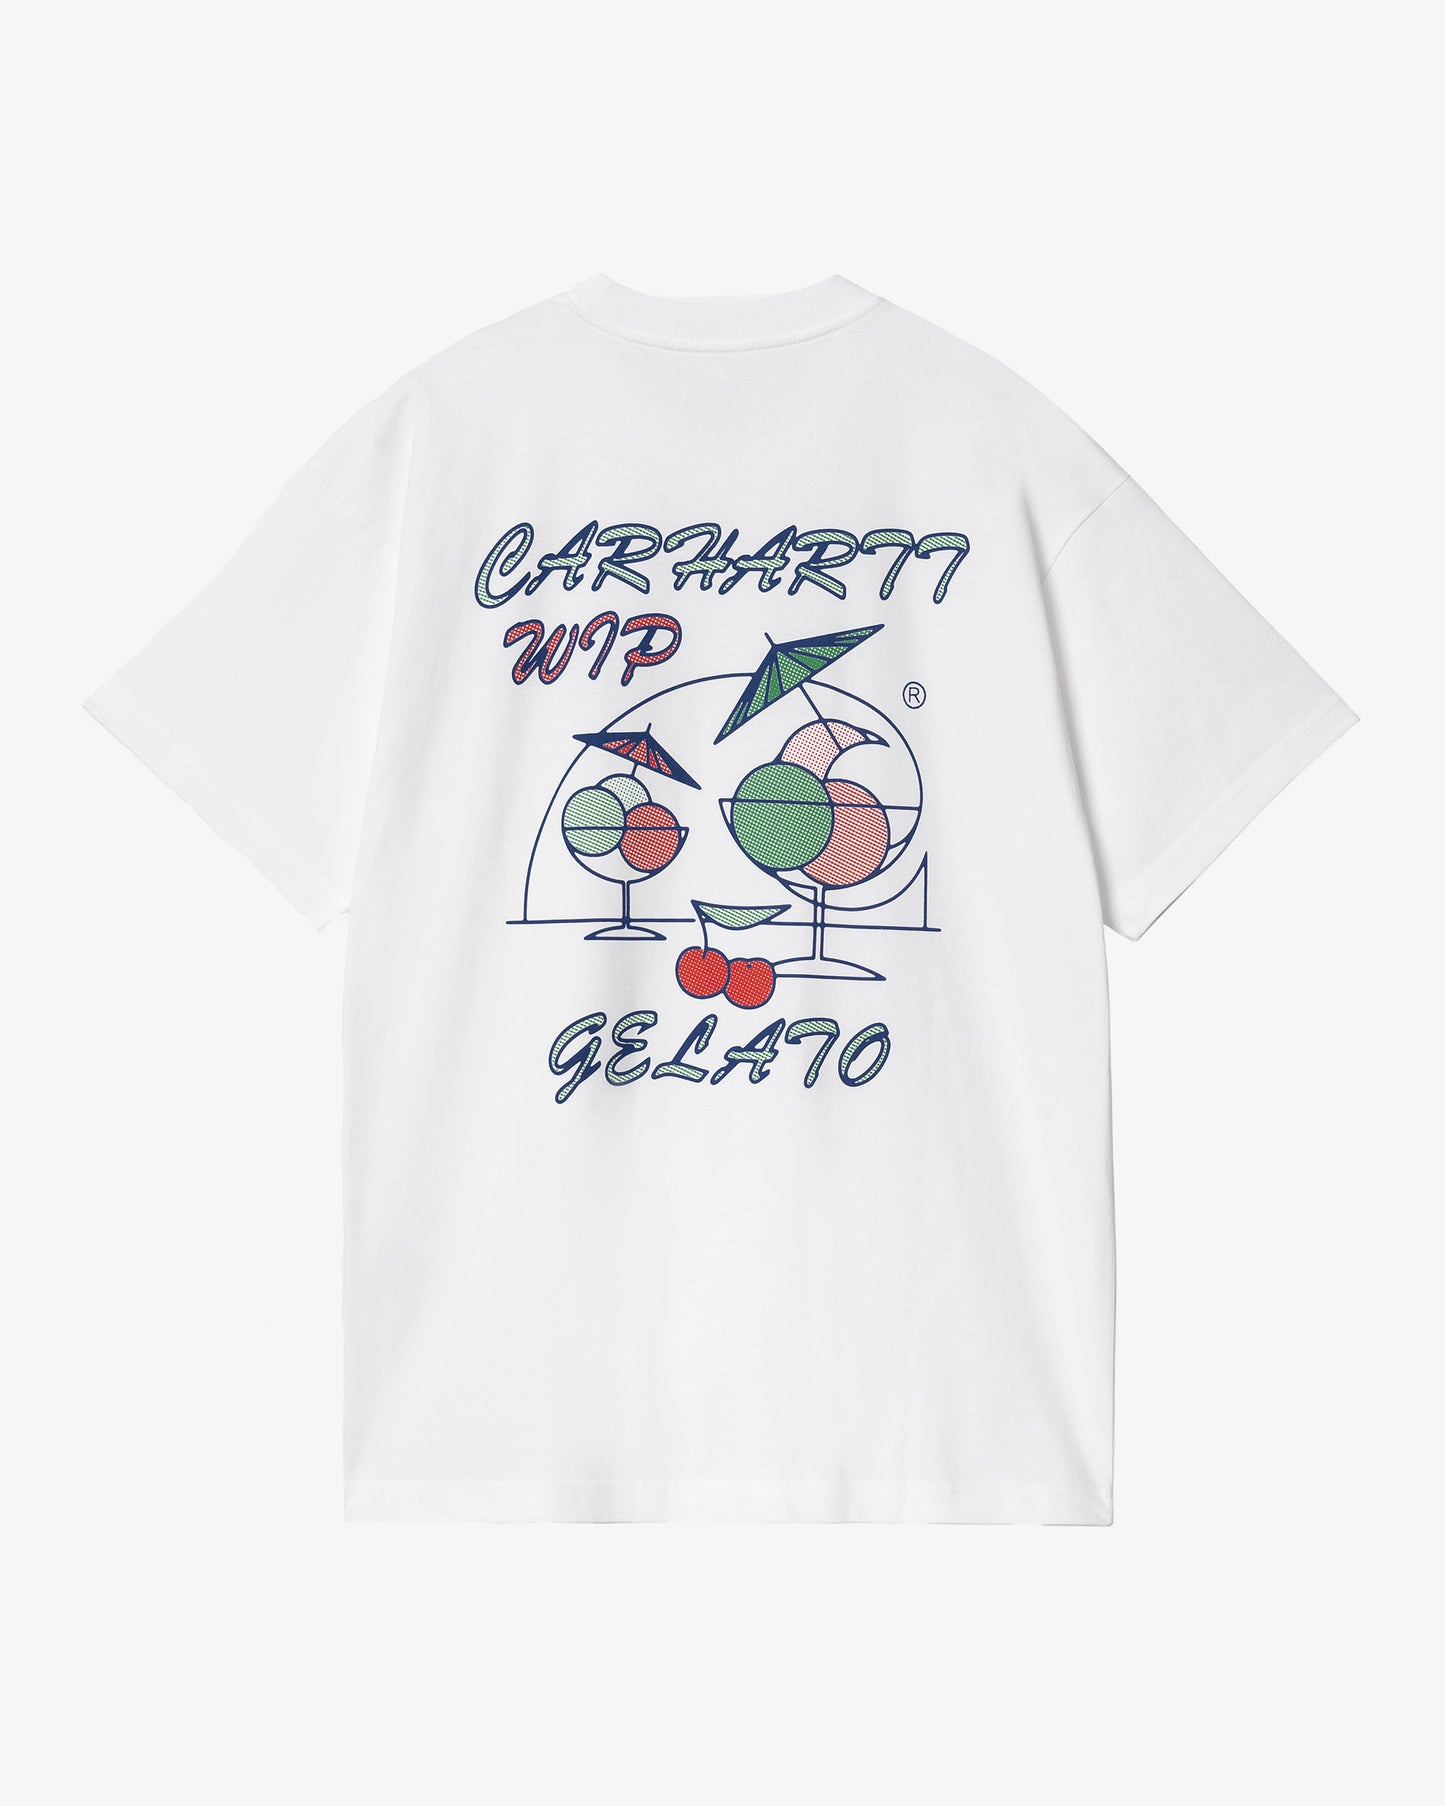 Carhartt WIP S/S Gelato T-Shirt